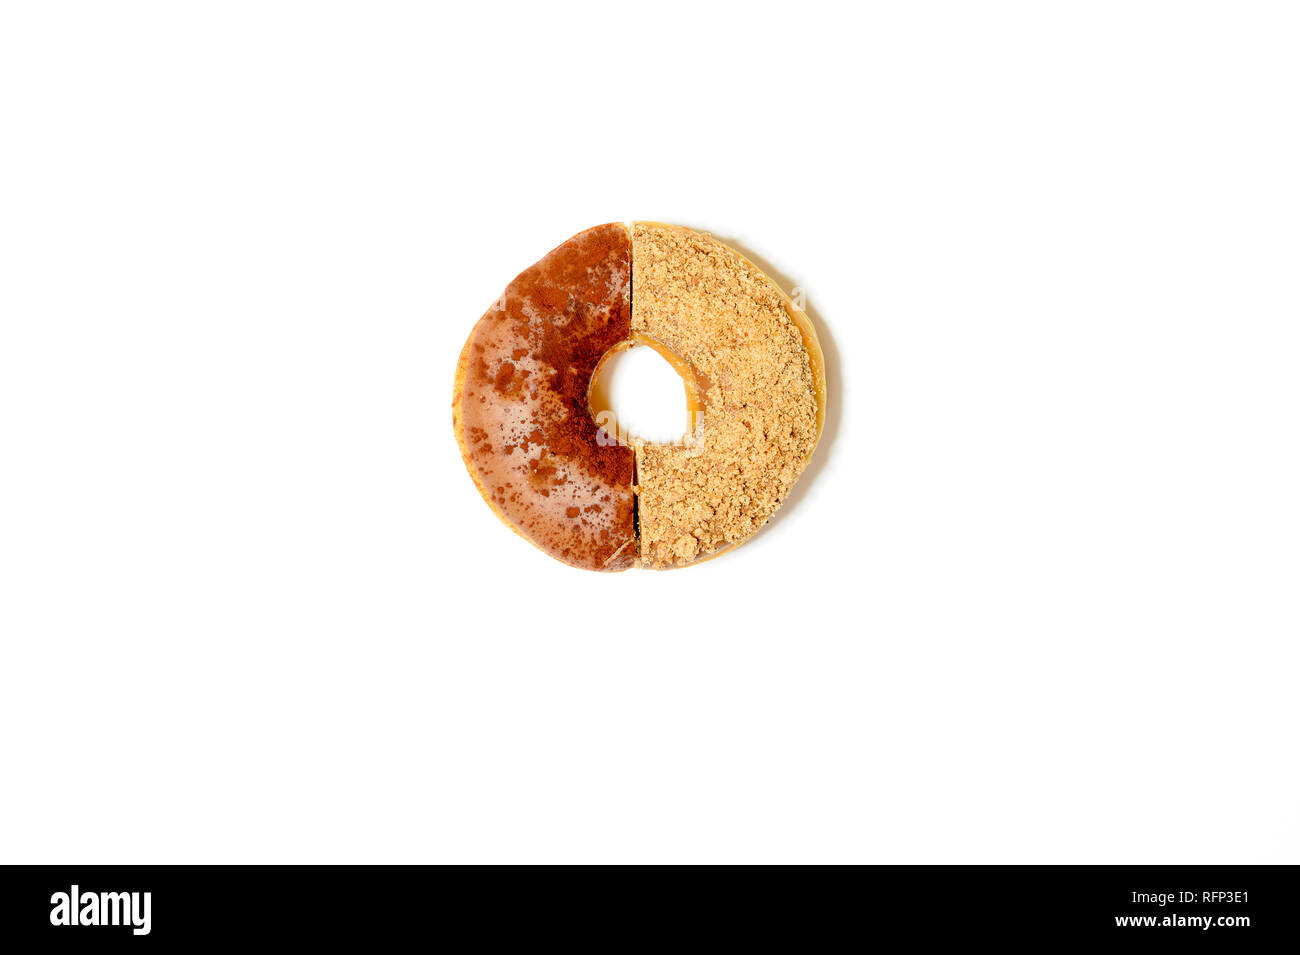 Eine Hälfte von zwei Donuts mit Streuseln, zu einem kombiniert, auf weißem Hintergrund Stockfoto